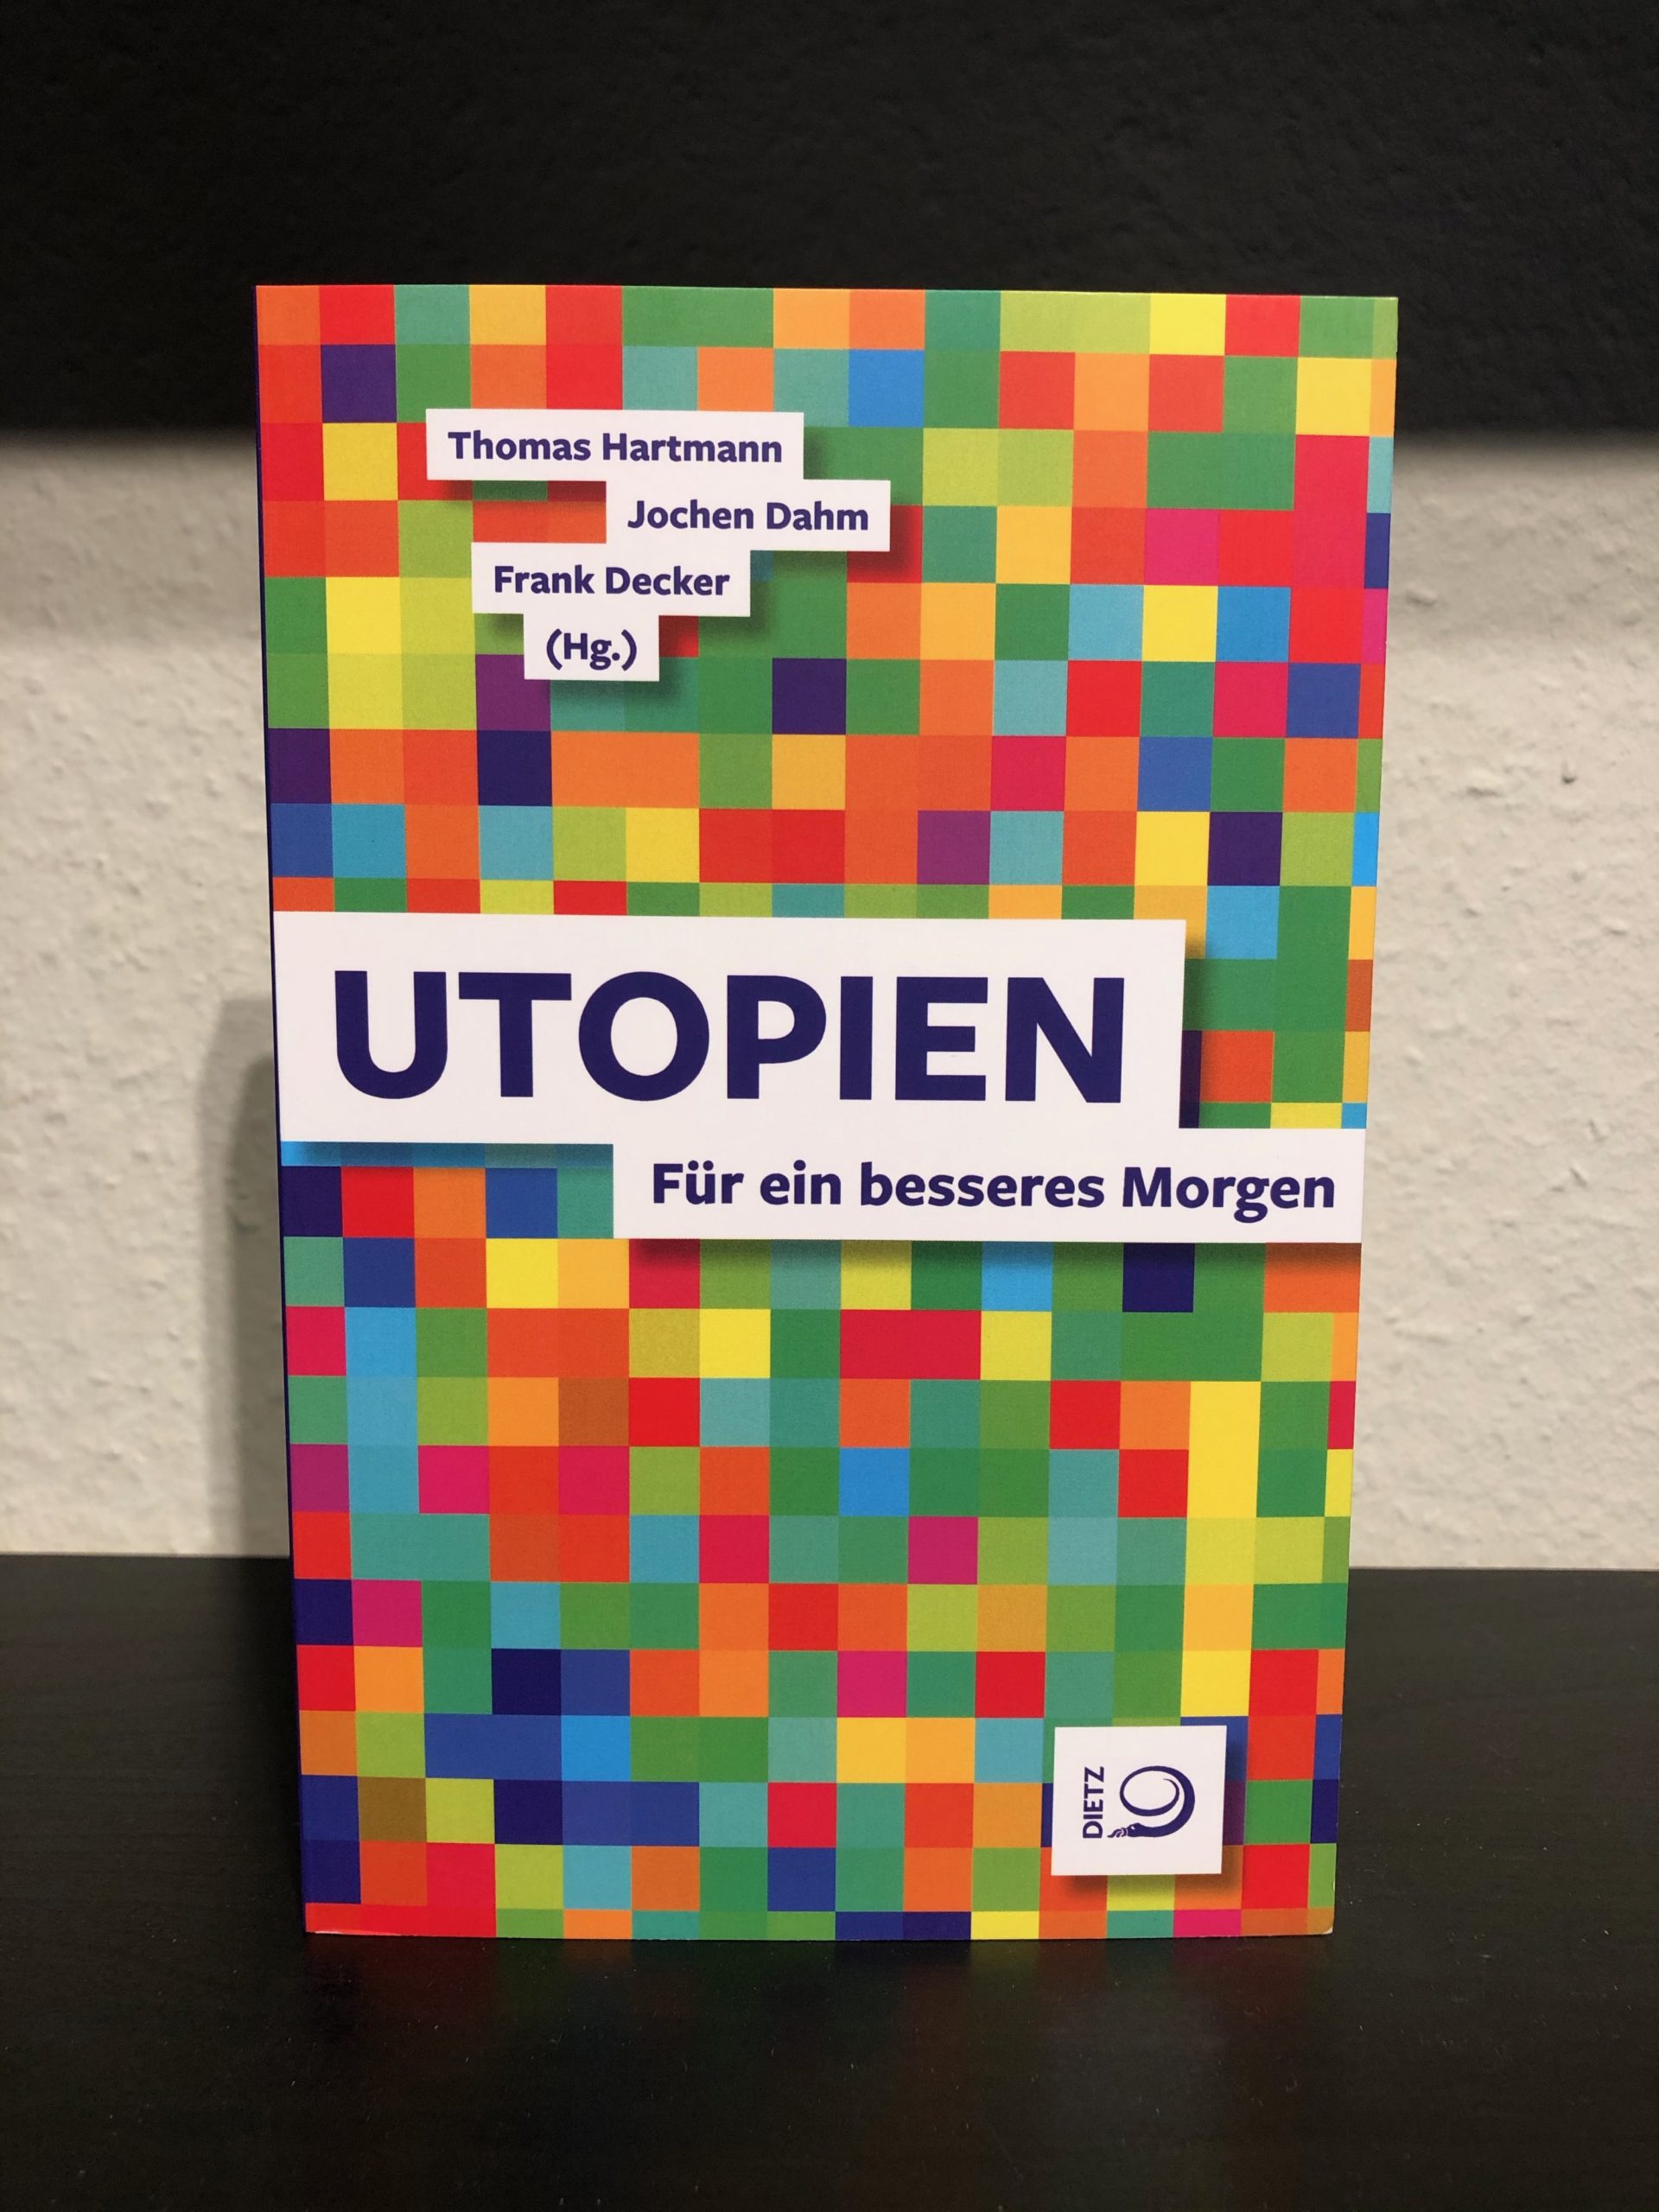 Utopien - Für ein besseres Morgen - Thomas Hartmann, Jochen Dahm, Frank Decker main image